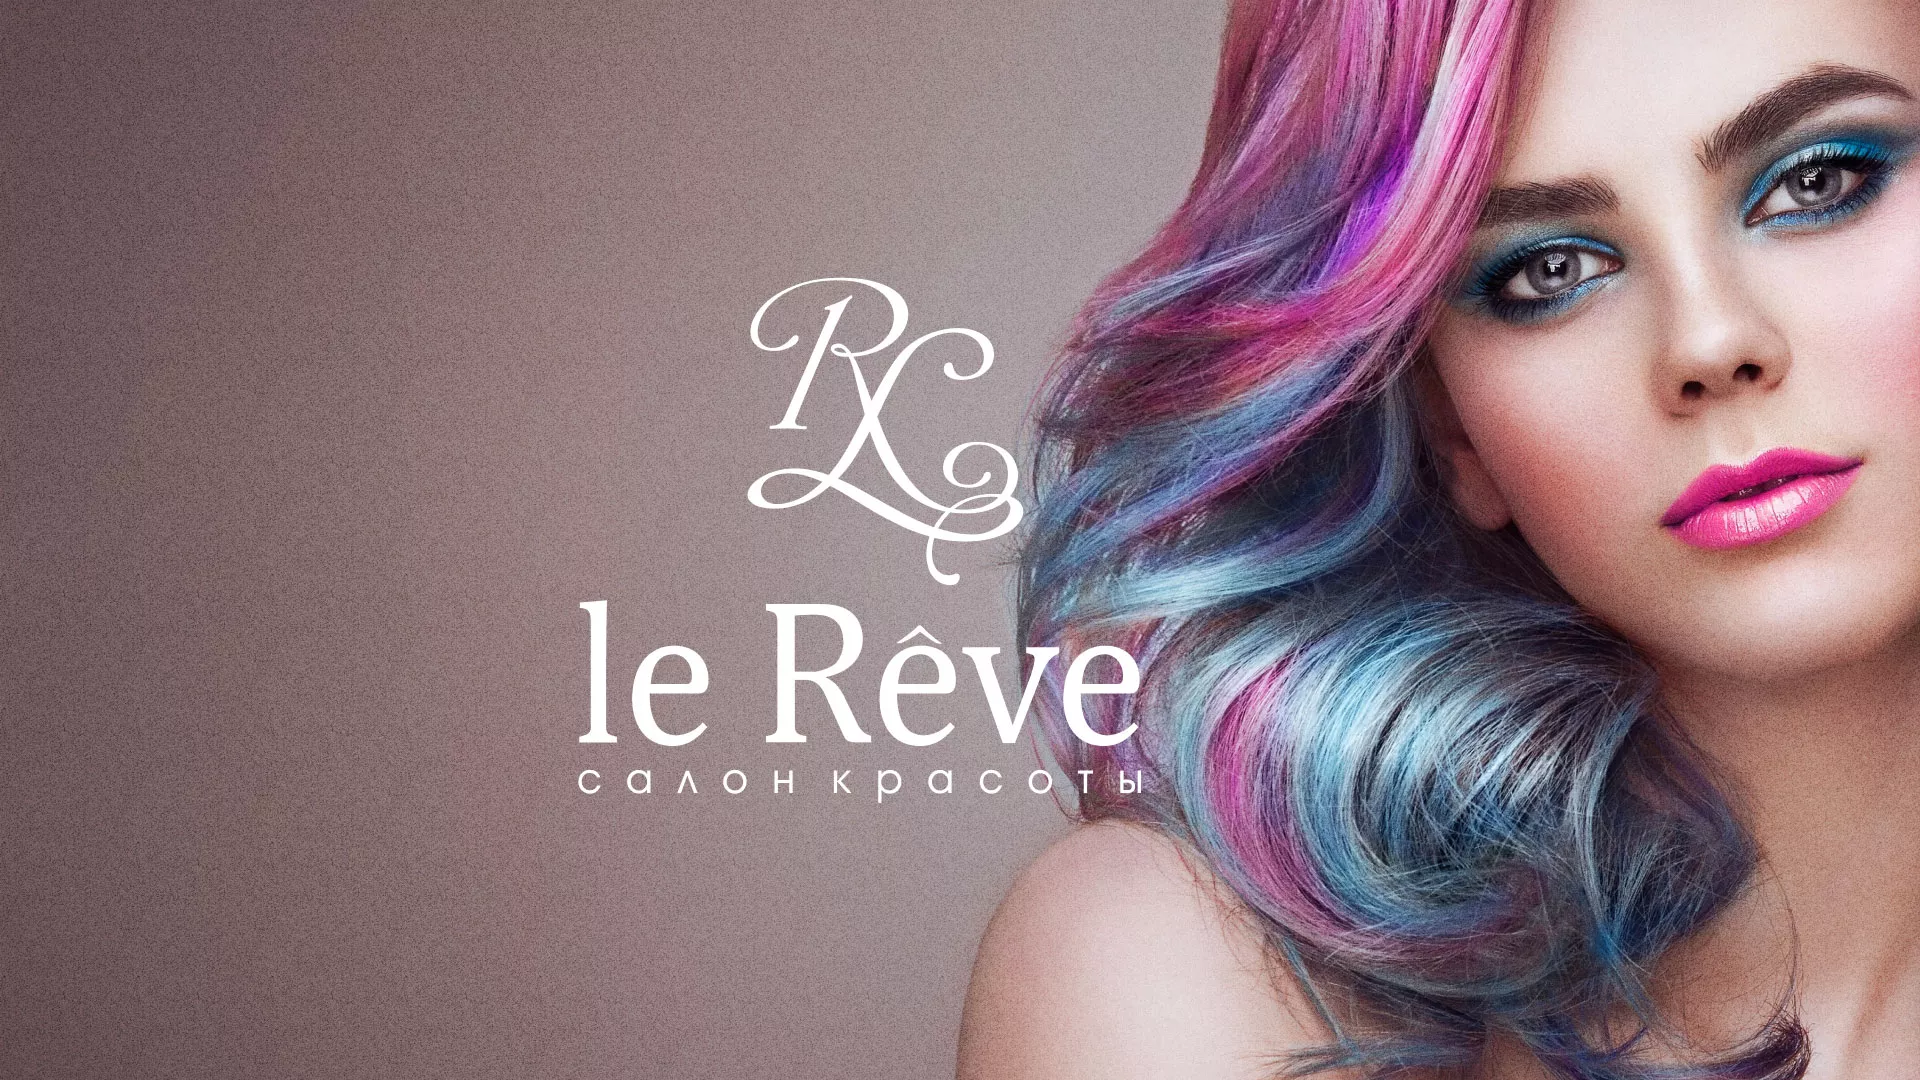 Создание сайта для салона красоты «Le Reve» в Железногорске